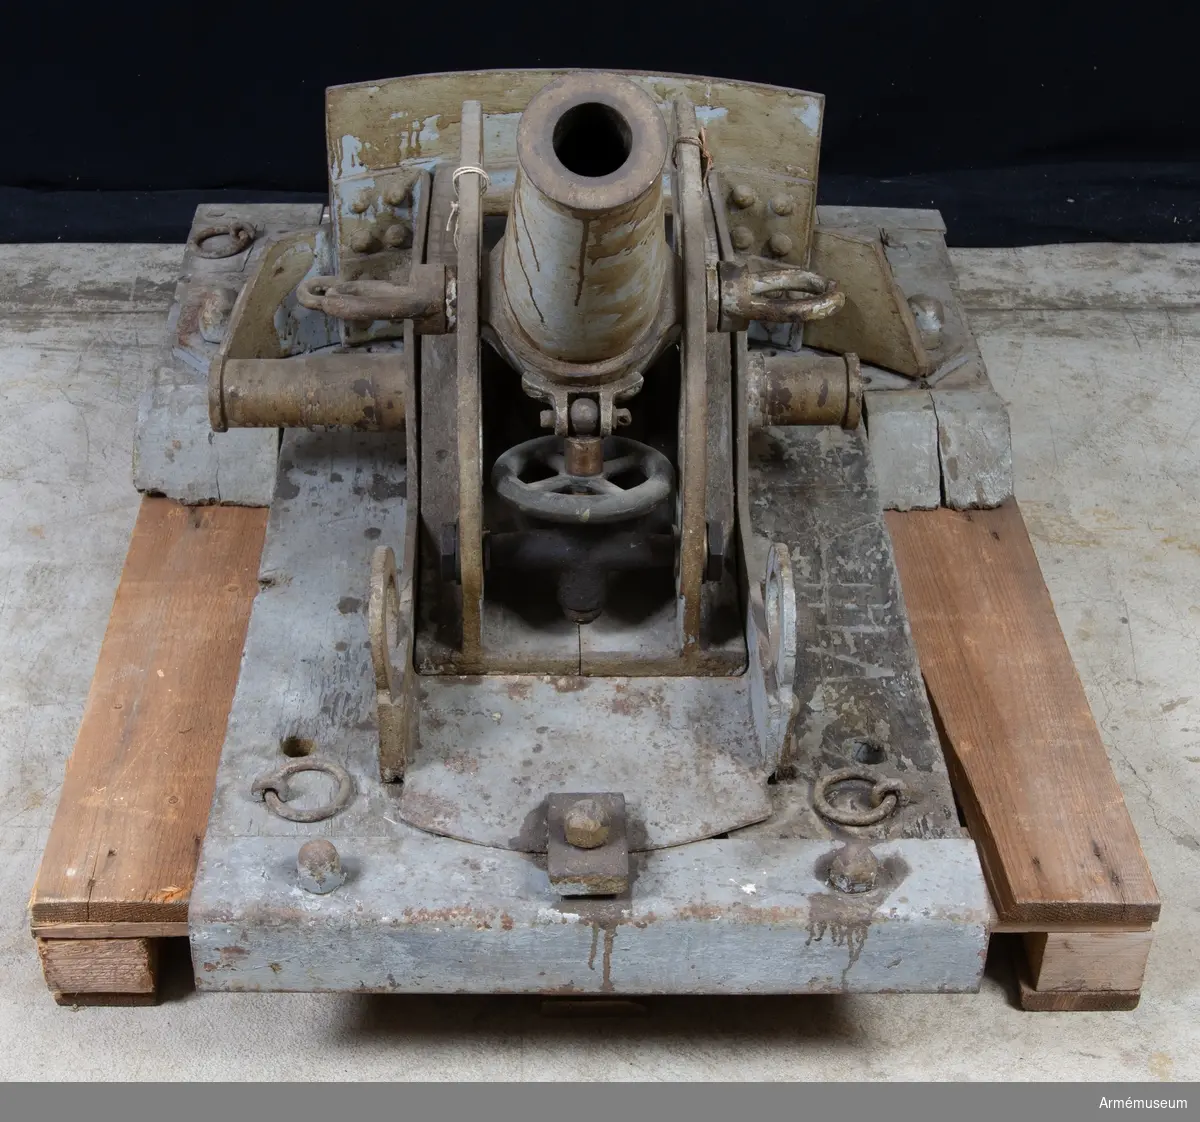 Grupp E X b.
58 mm skyttegravsmörsare med pivotlavettage. Nr 2.
Franskt namn: Mortier de 58 mm type 2, Crapouillot (lilla paddan).